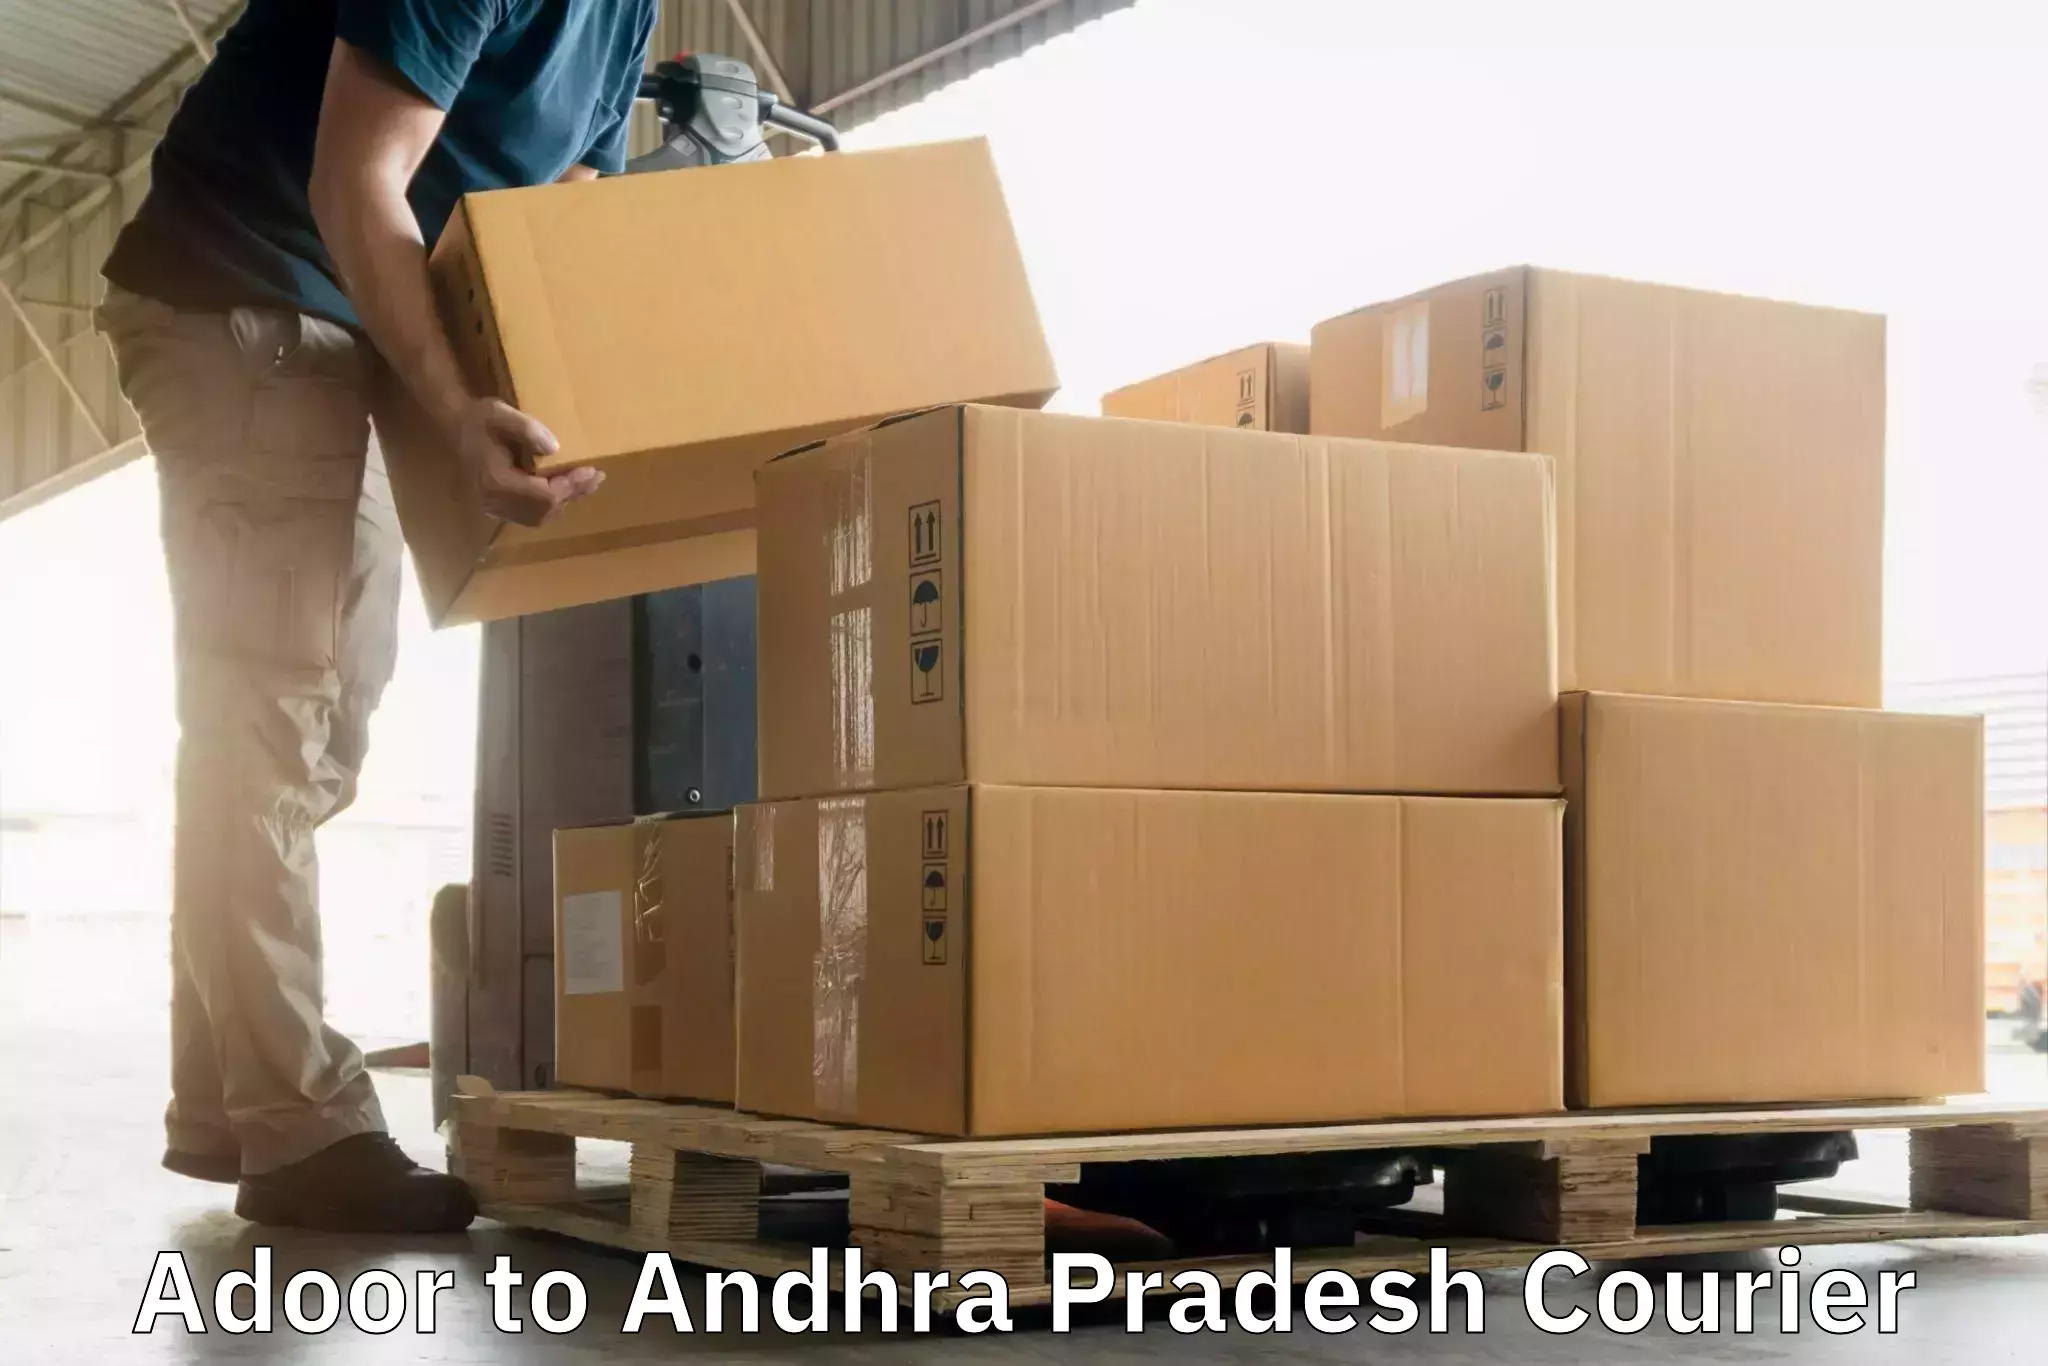 Cost-effective courier options Adoor to Venkatagirikota